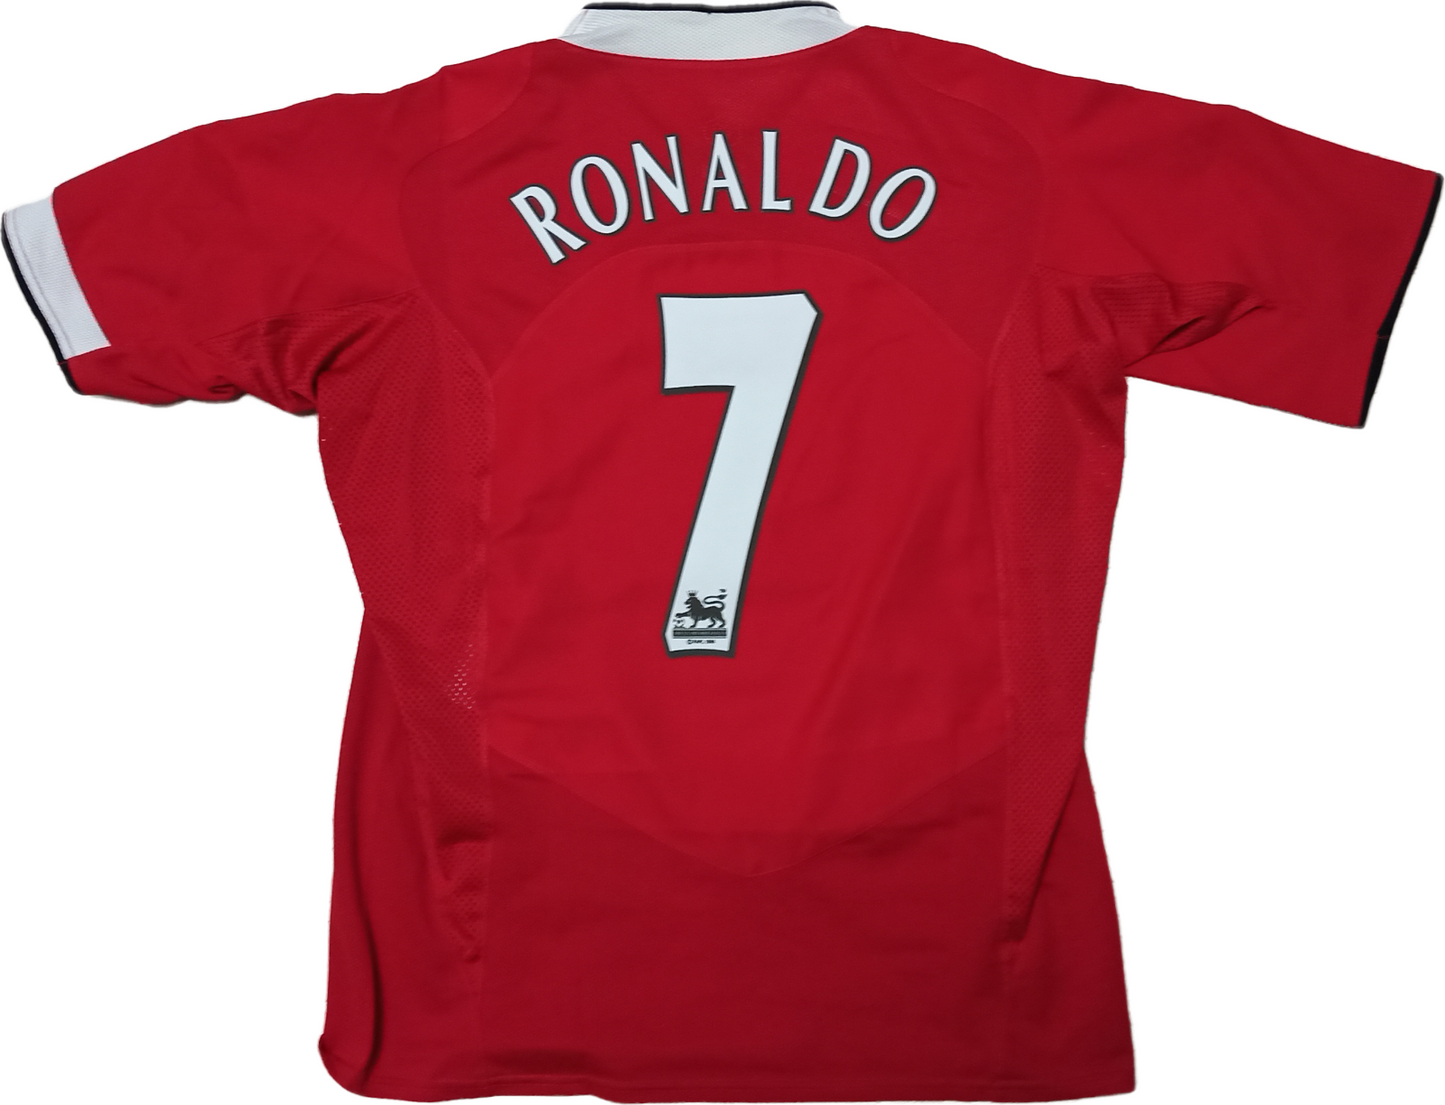 maglia Cristiano Ronaldo manchester united 2004 2005 Vodafone signed jersey